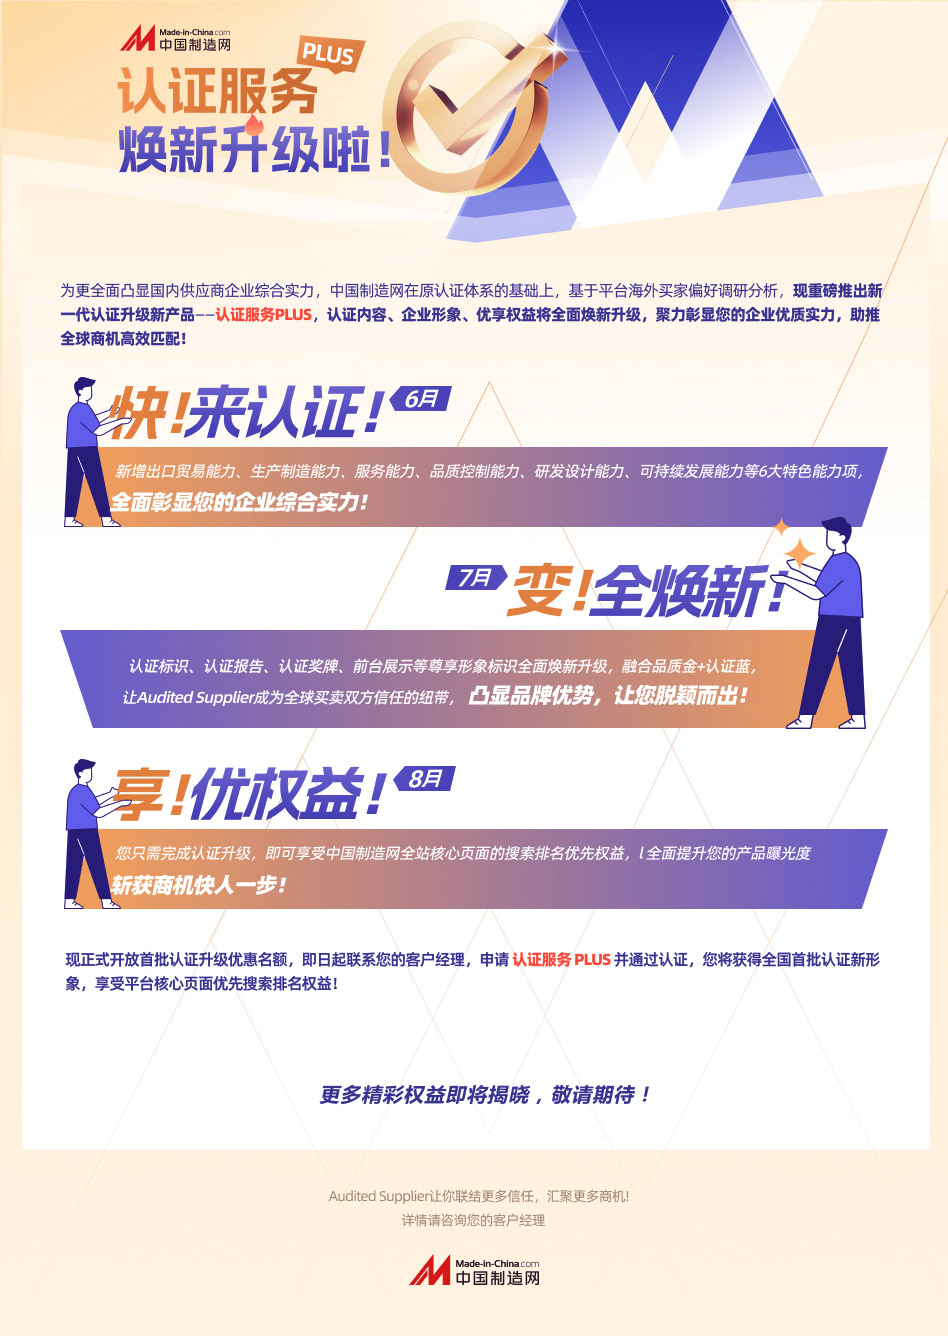 中国制造网认证服务PLUS焕新升级啦！